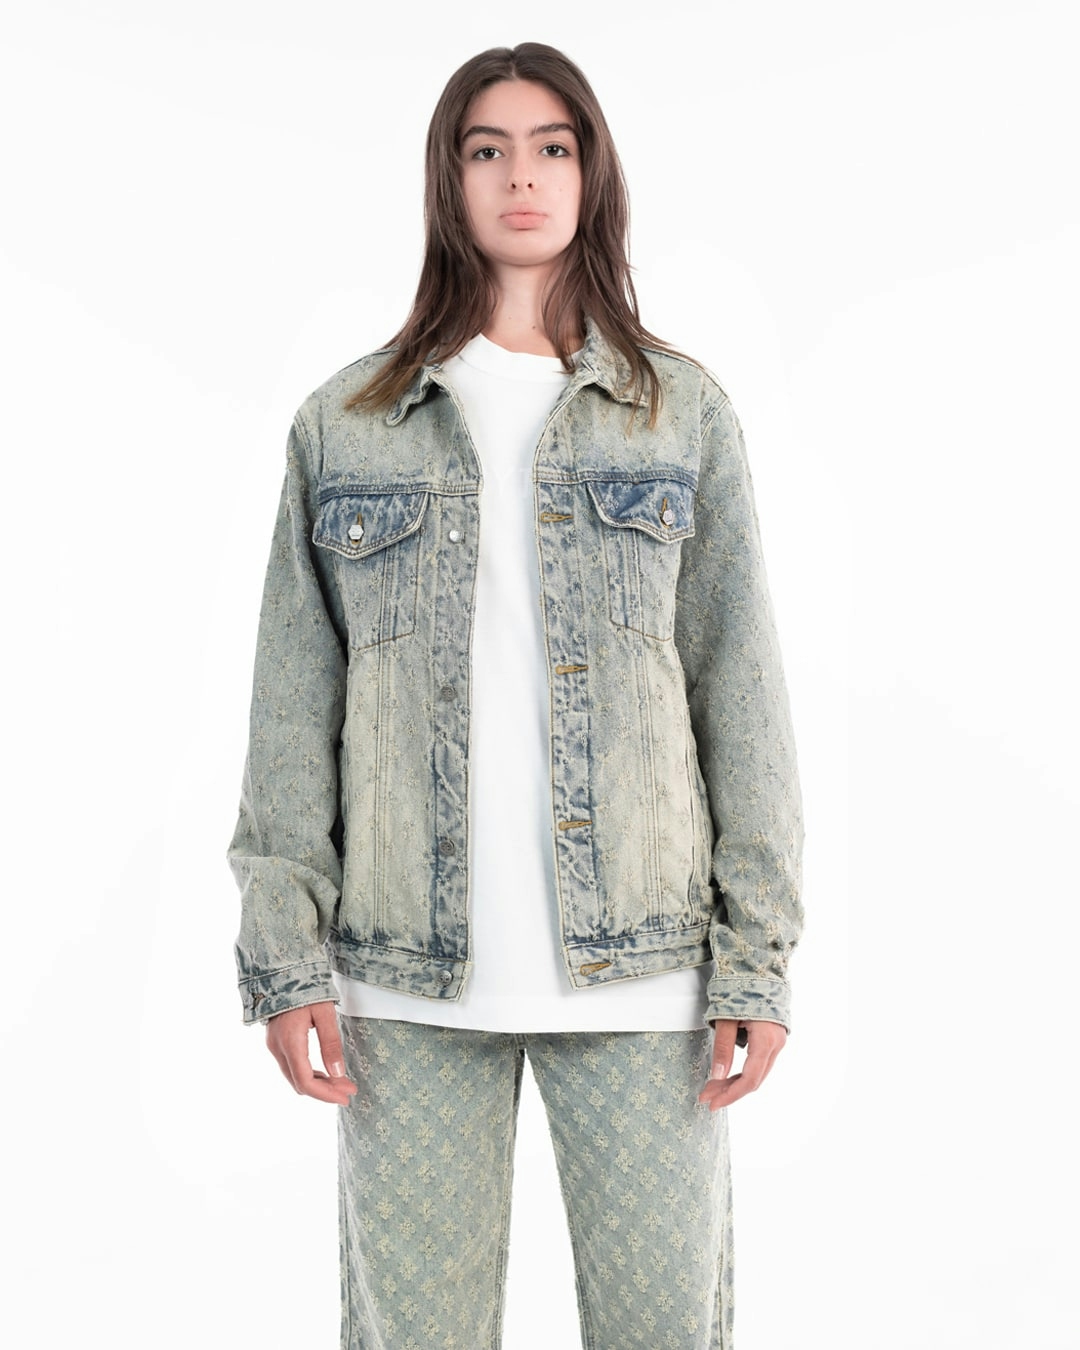 Dis-patterned denim jacket